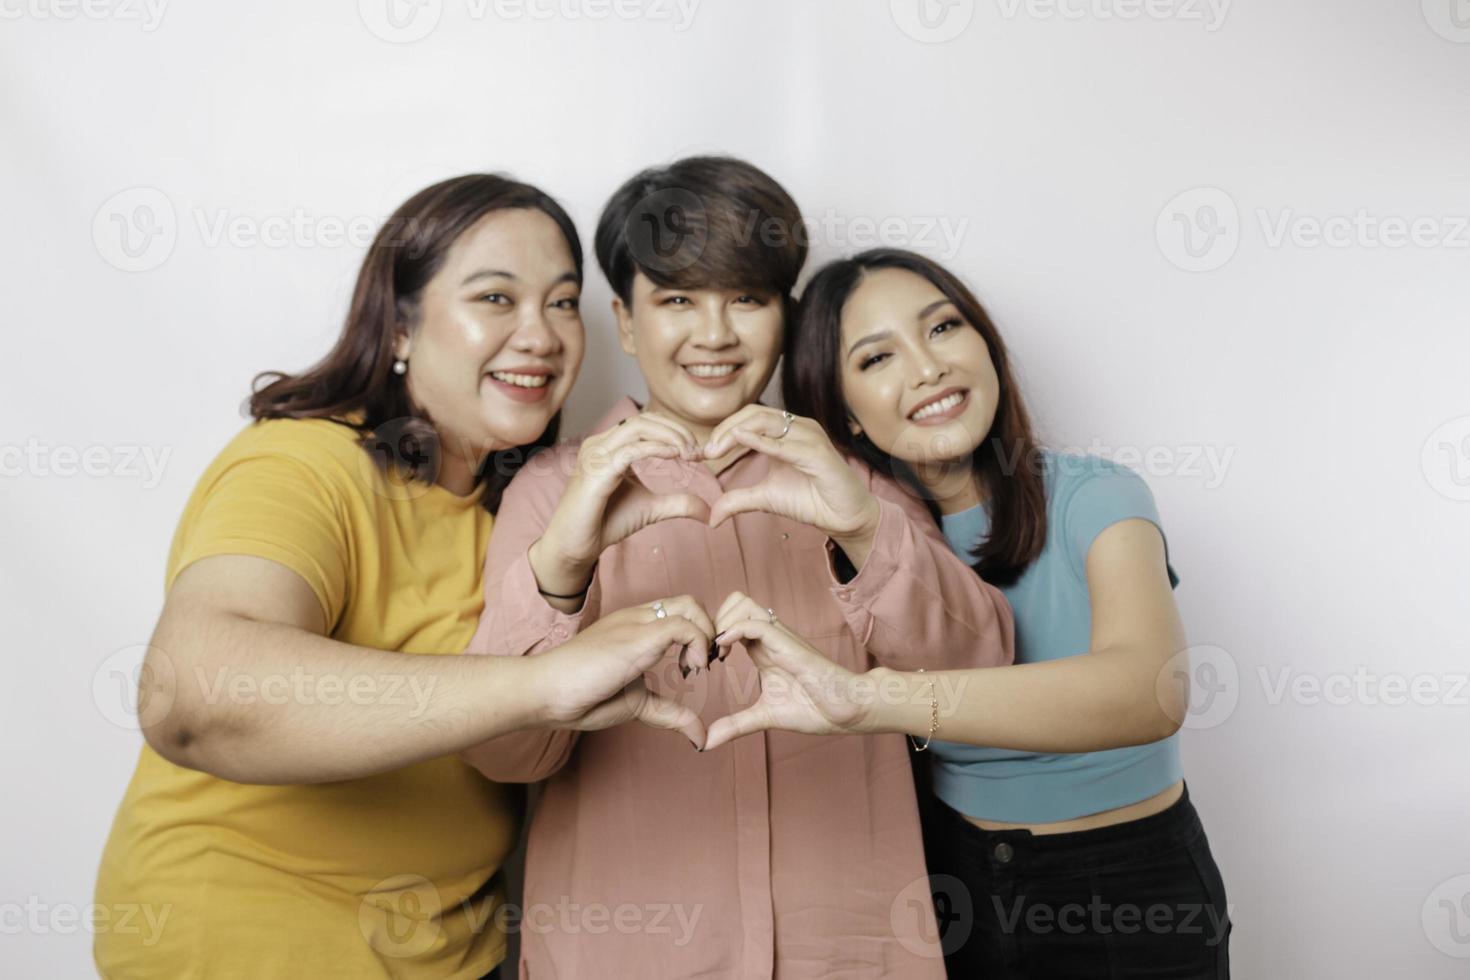 três mulheres asiáticas se sentem felizes e um gesto de coração de formas românticas expressa sentimentos ternos, conceito de amizade próxima. foto